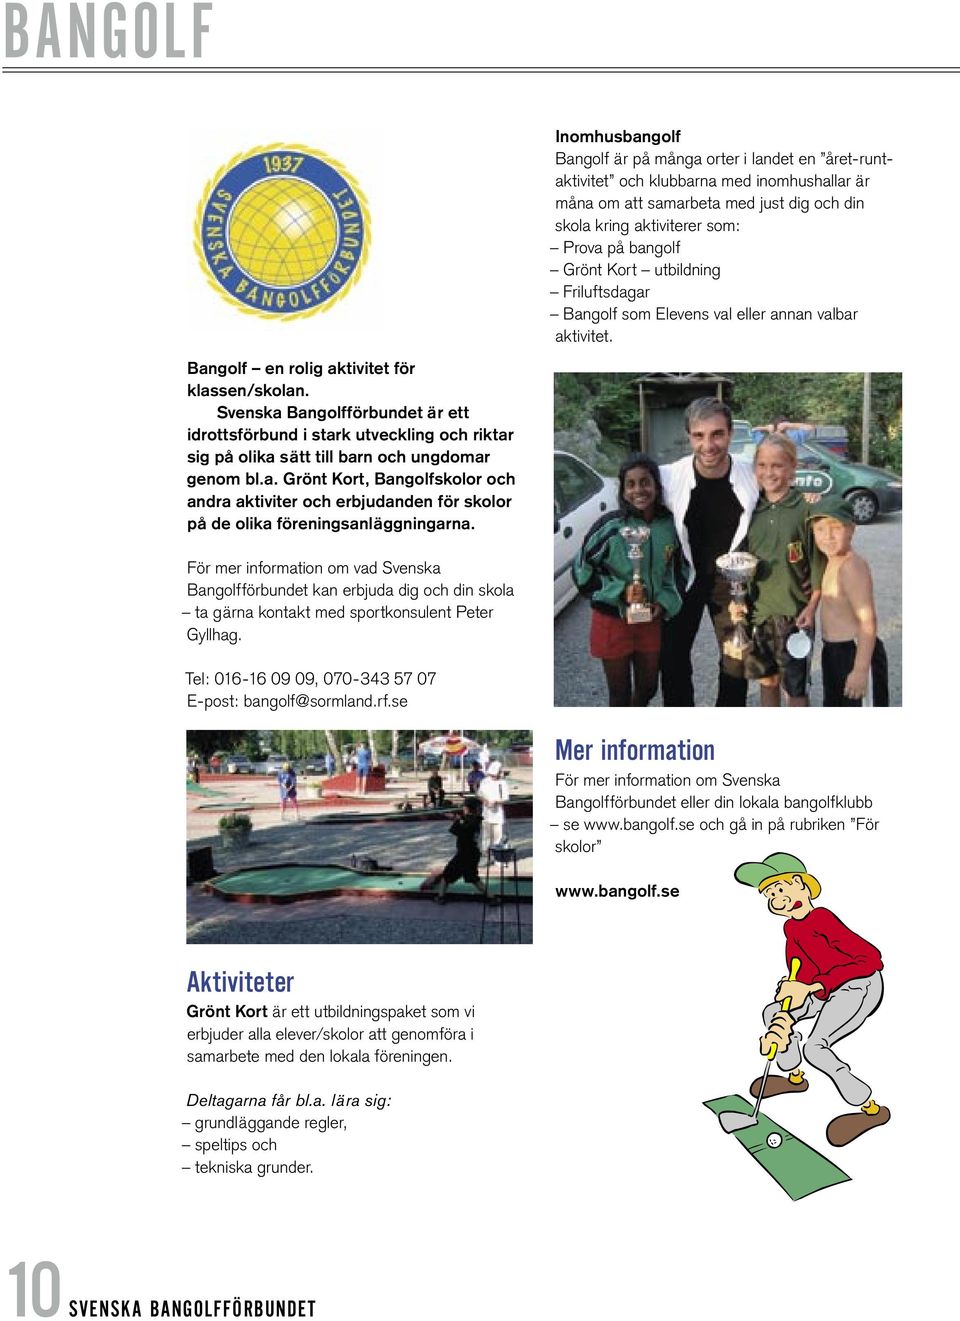 Svenska Bangolfförbundet är ett idrottsförbund i stark utveckling och riktar sig på olika sätt till barn och ungdomar genom bl.a. Grönt Kort, Bangolfskolor och andra aktiviter och erbjudanden för skolor på de olika föreningsanläggningarna.